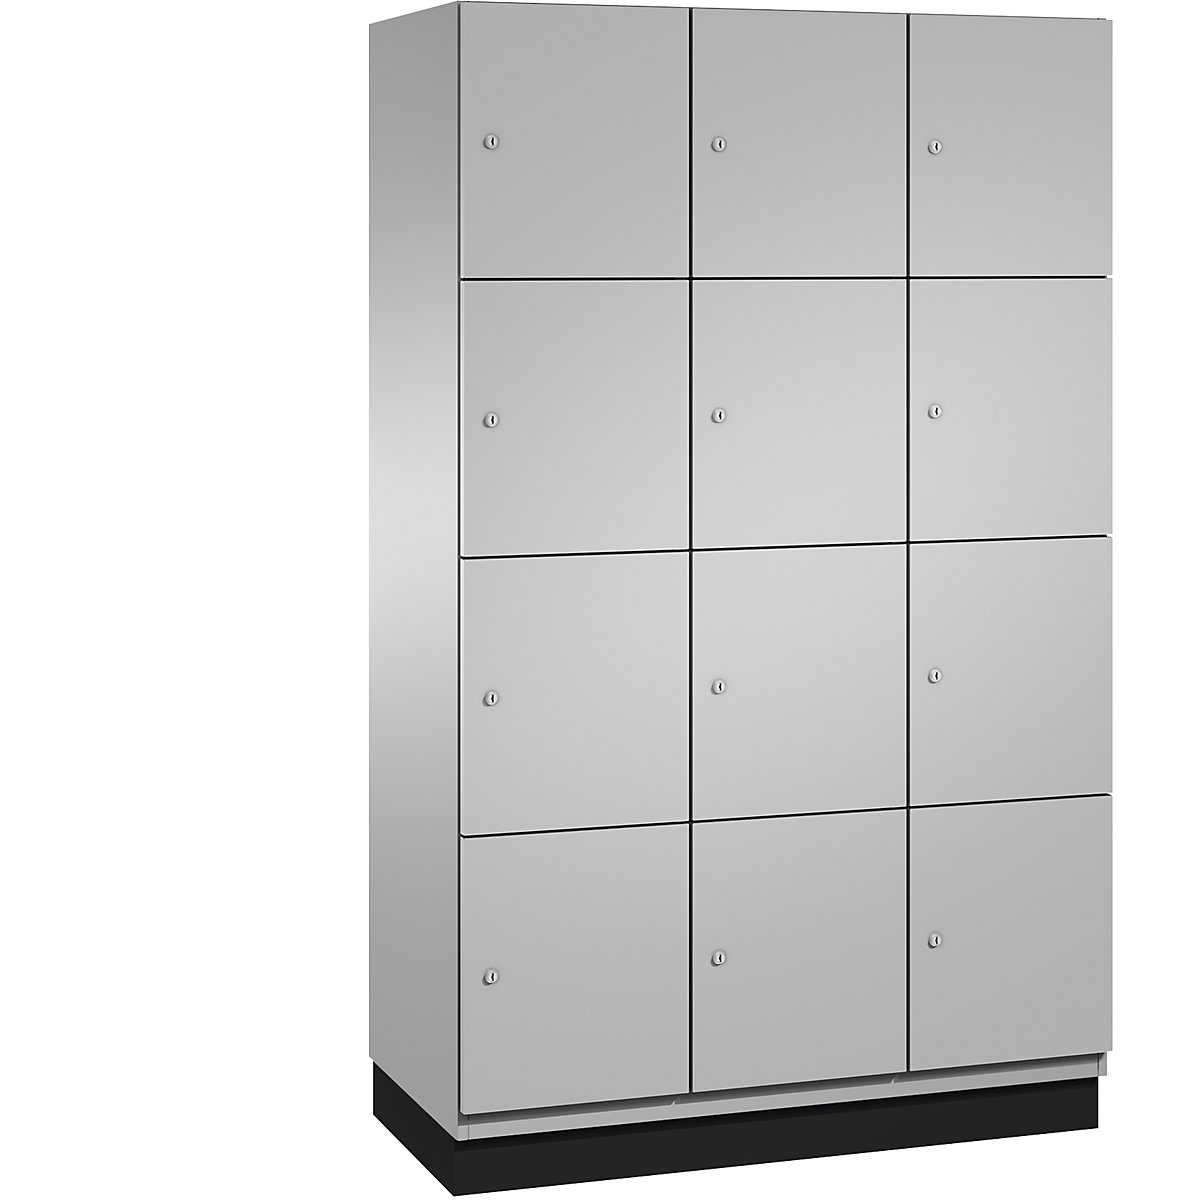 C+P – Skříň s uzamykatelnými boxy CAMBIO s dveřmi z ocelového plechu, 12 boxů, šířka 1200 mm, korpus bílý hliník / dveře bílý hliník, výška boxu 462,5 mm